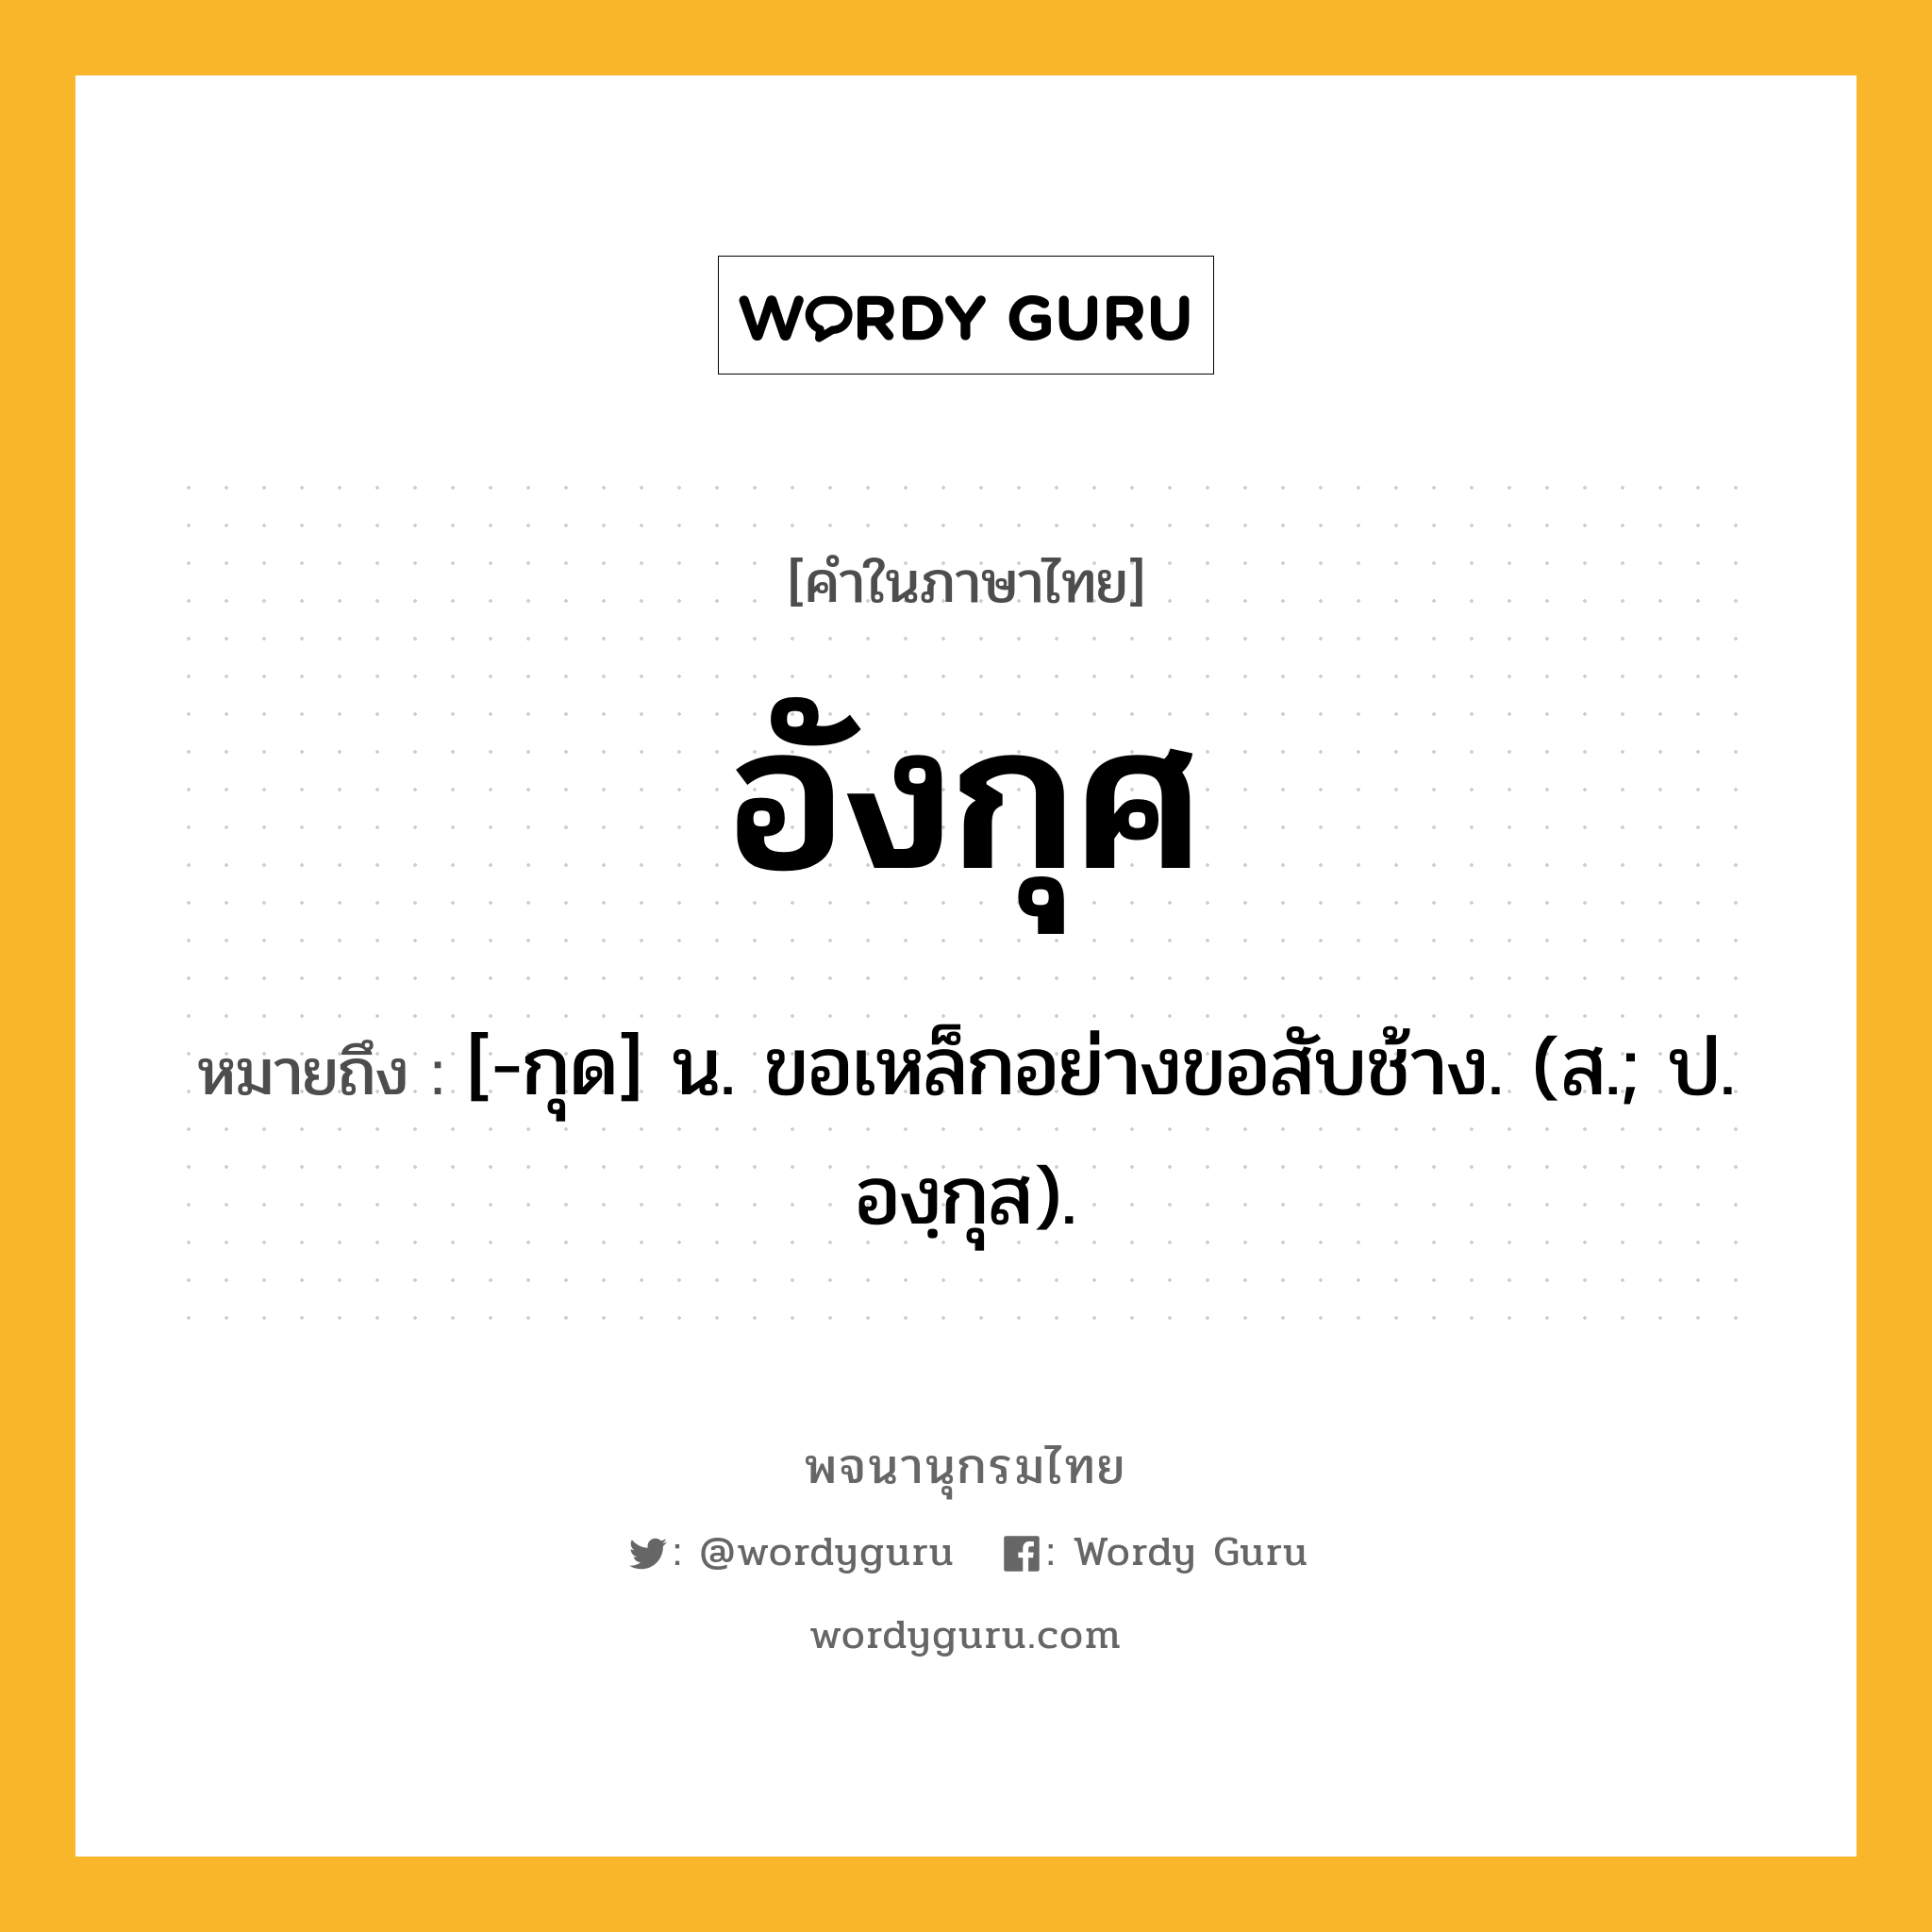 อังกุศ หมายถึงอะไร?, คำในภาษาไทย อังกุศ หมายถึง [-กุด] น. ขอเหล็กอย่างขอสับช้าง. (ส.; ป. องฺกุส).